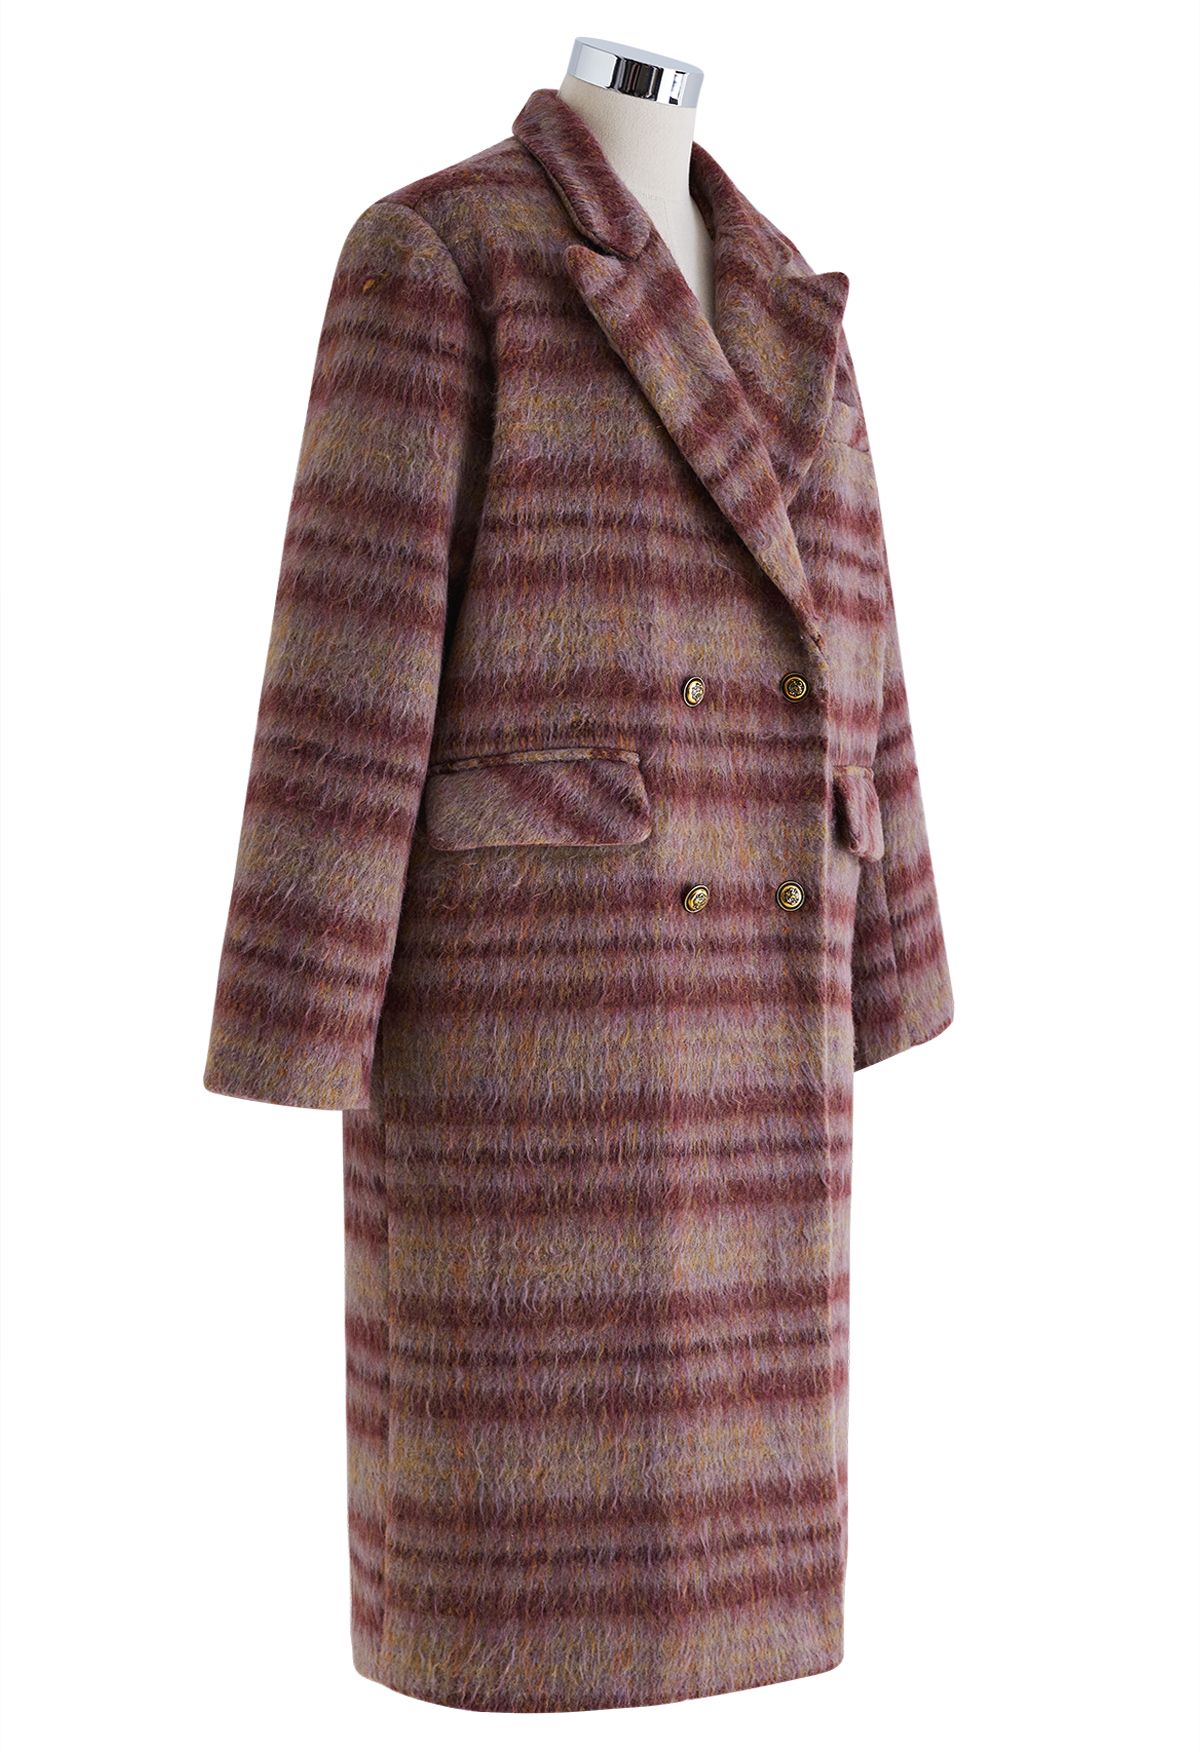 Langer Mantel aus Wollmischung mit Karomuster und spitzem Revers in Beere